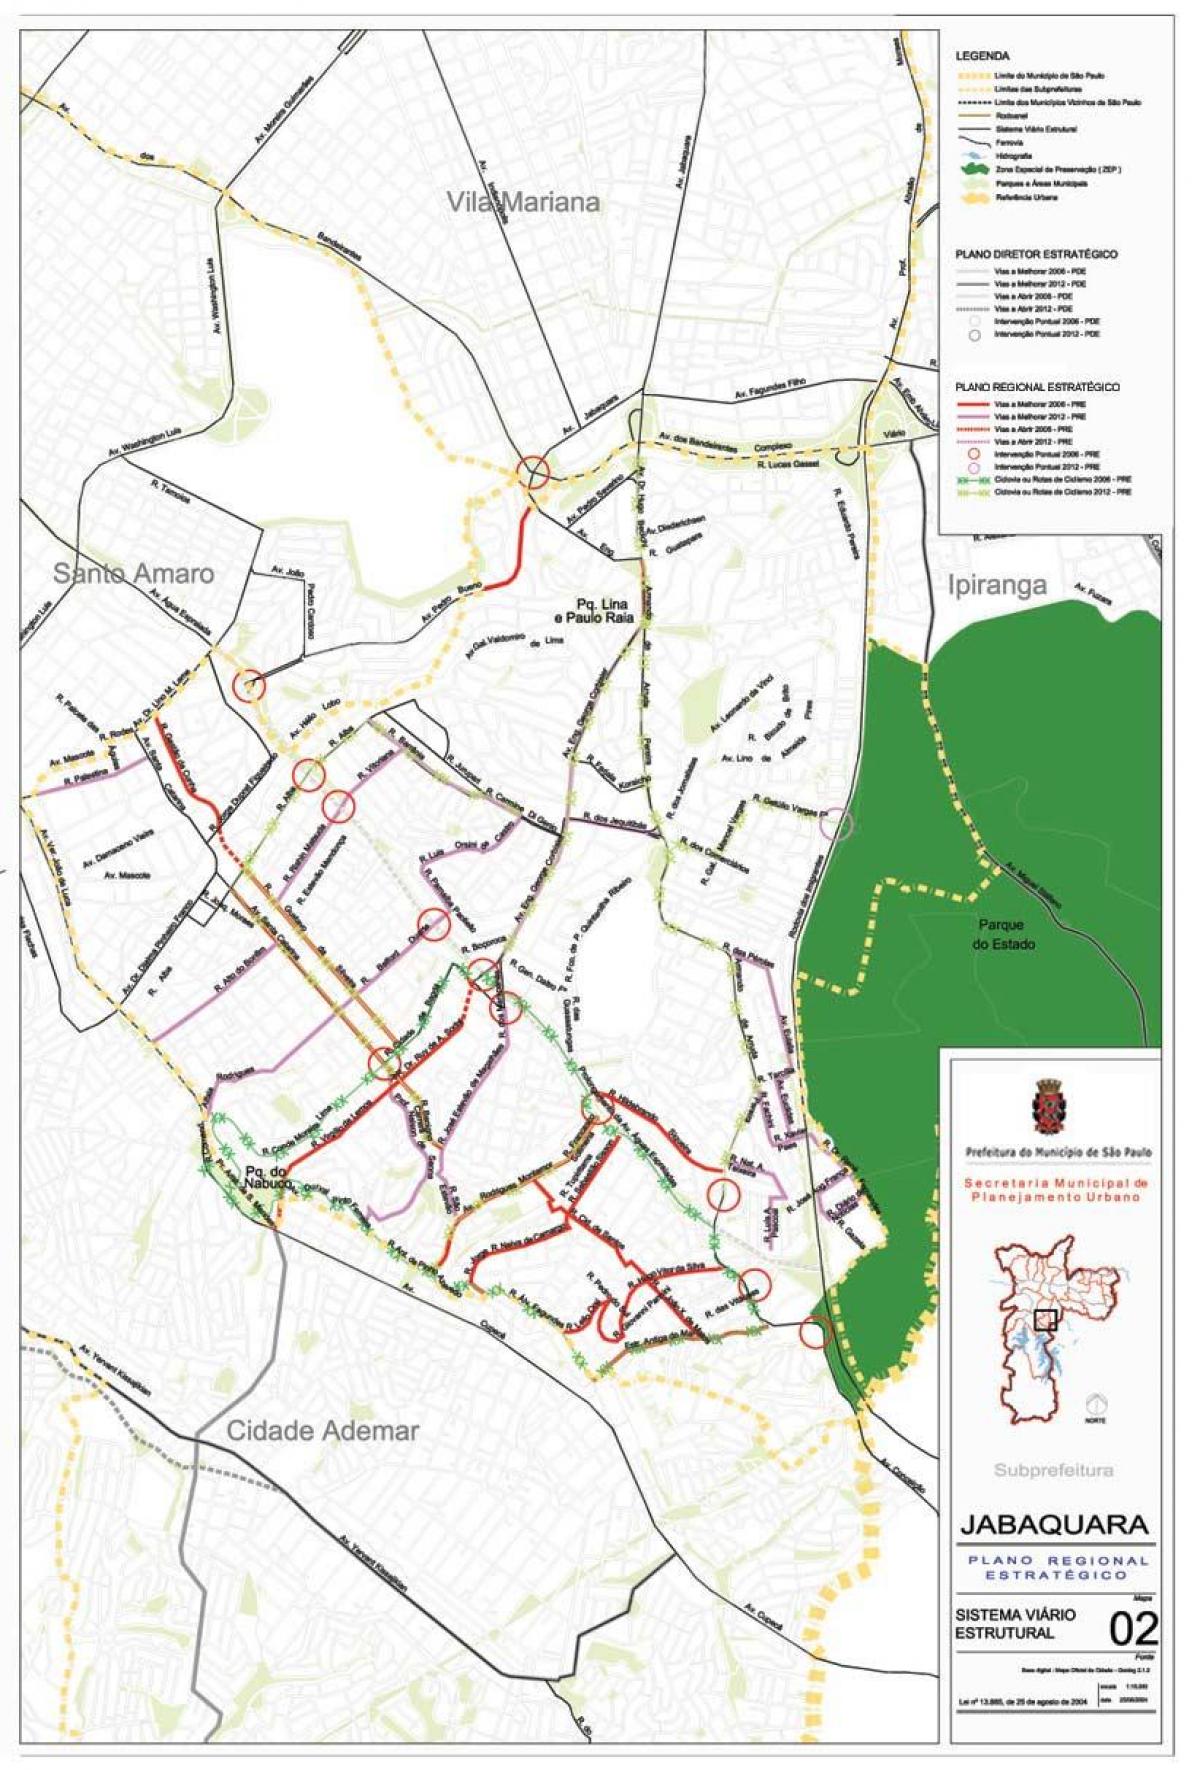 Mapa Jabaquara São Paulo - Silnice